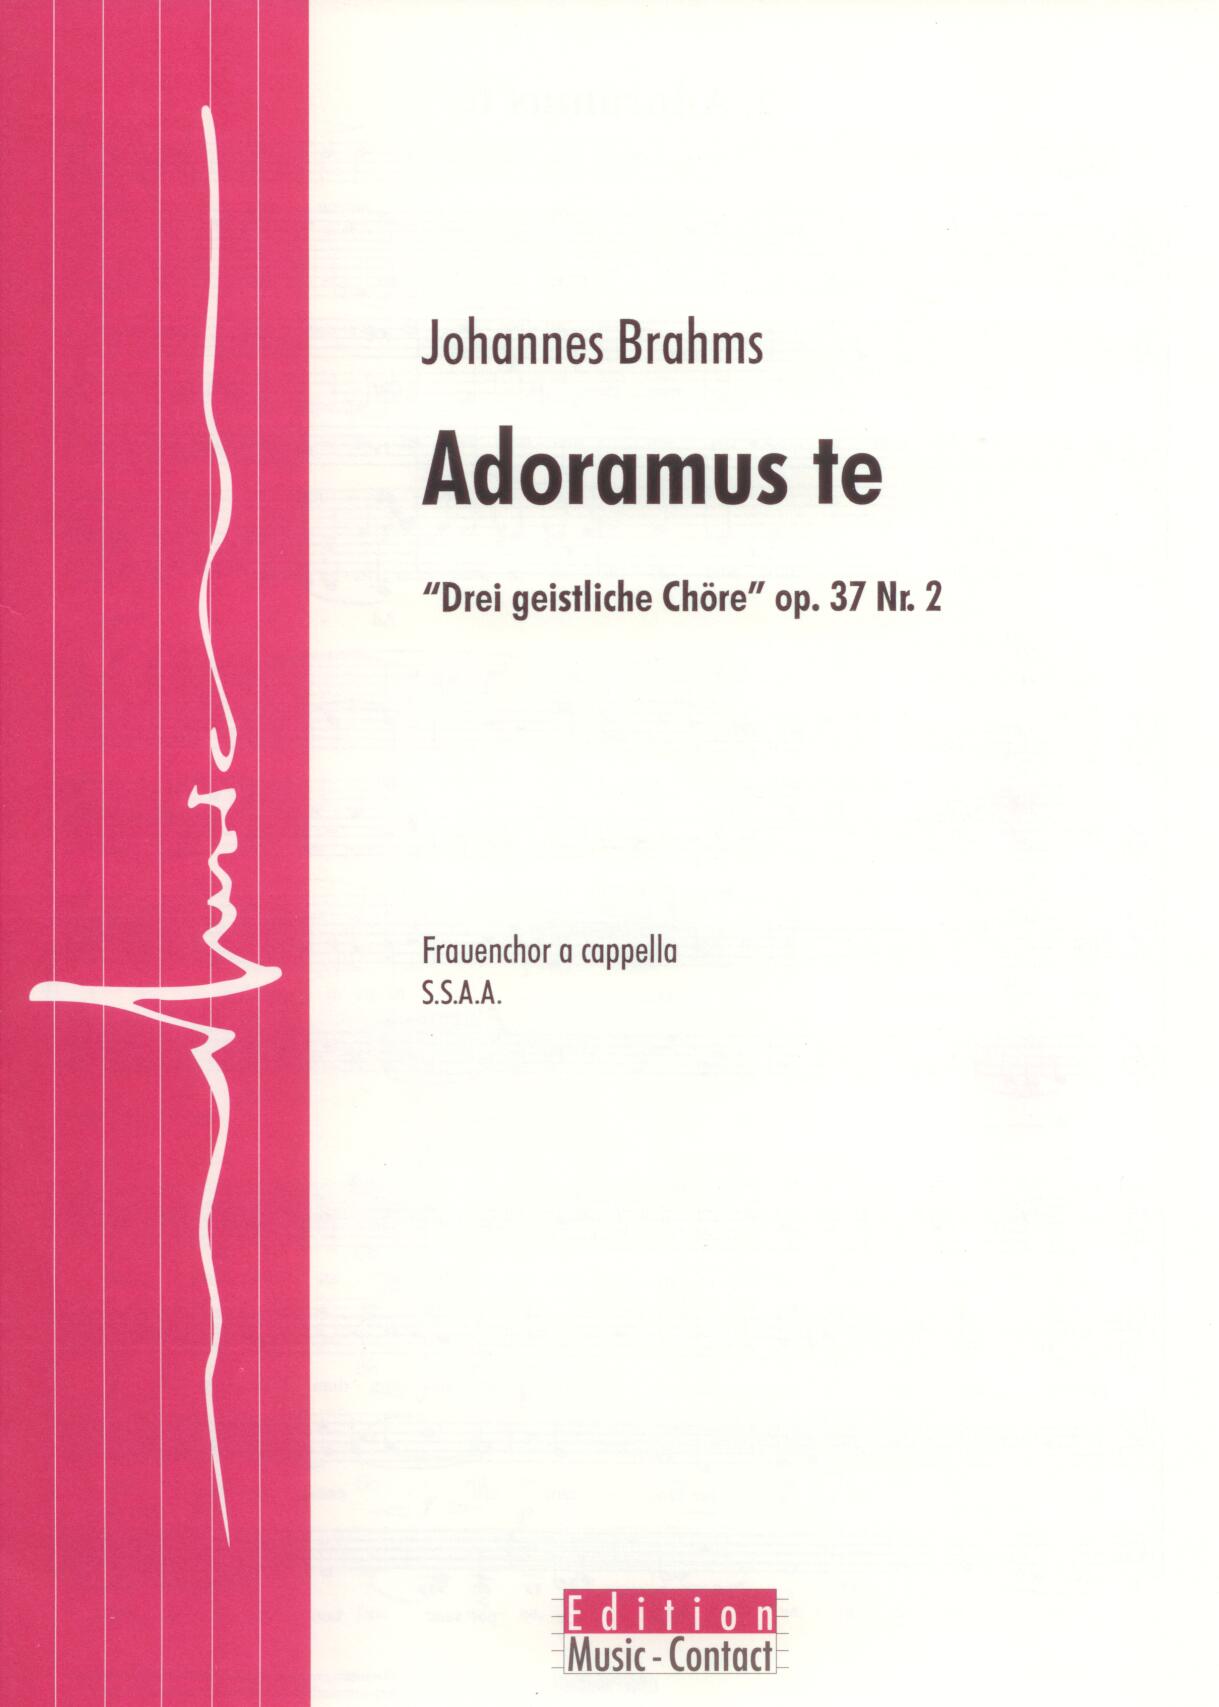 Adoramus te - Show sample score